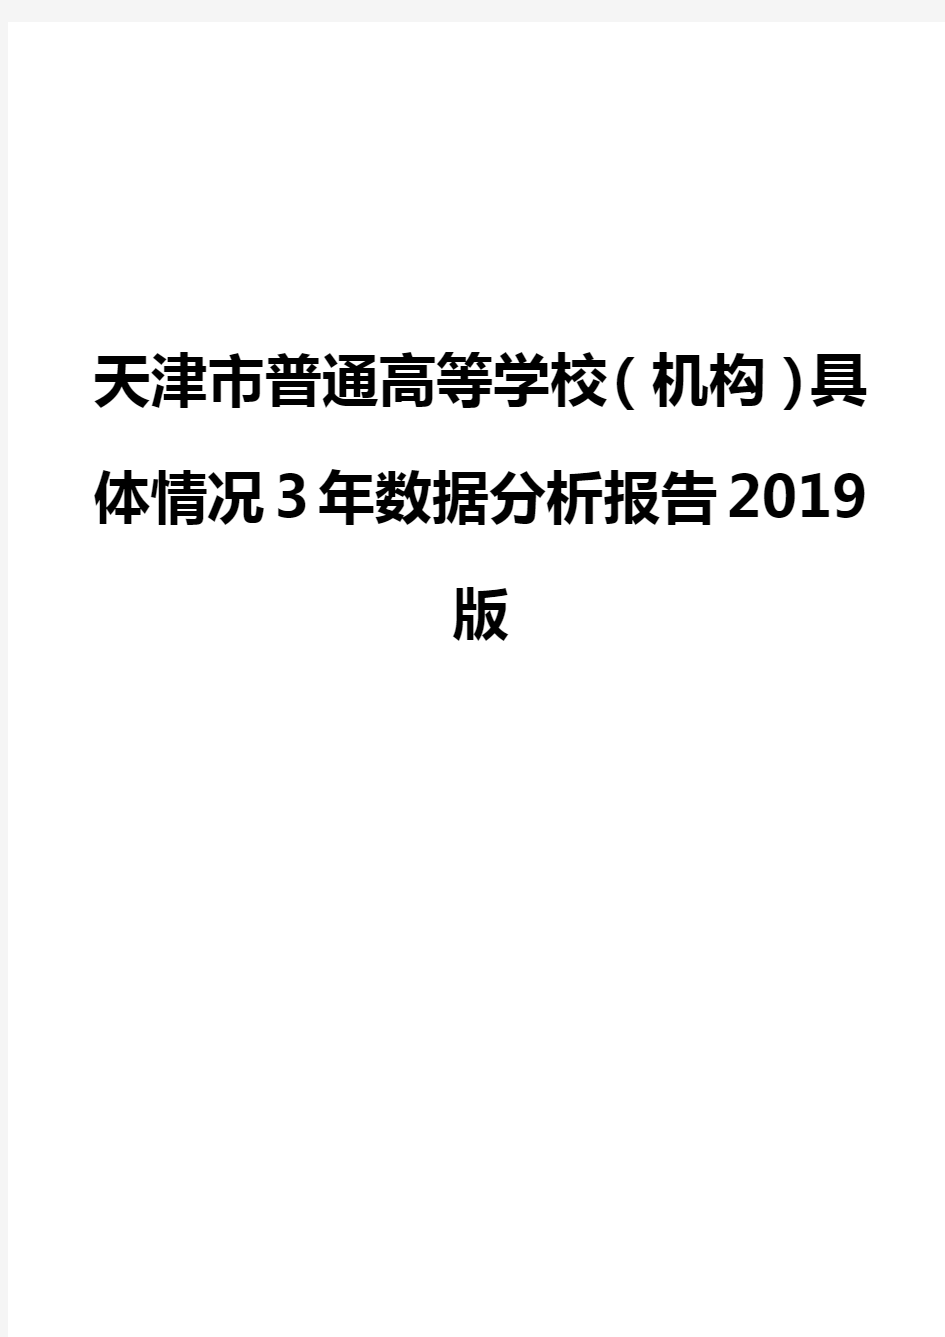 天津市普通高等学校(机构)具体情况3年数据分析报告2019版